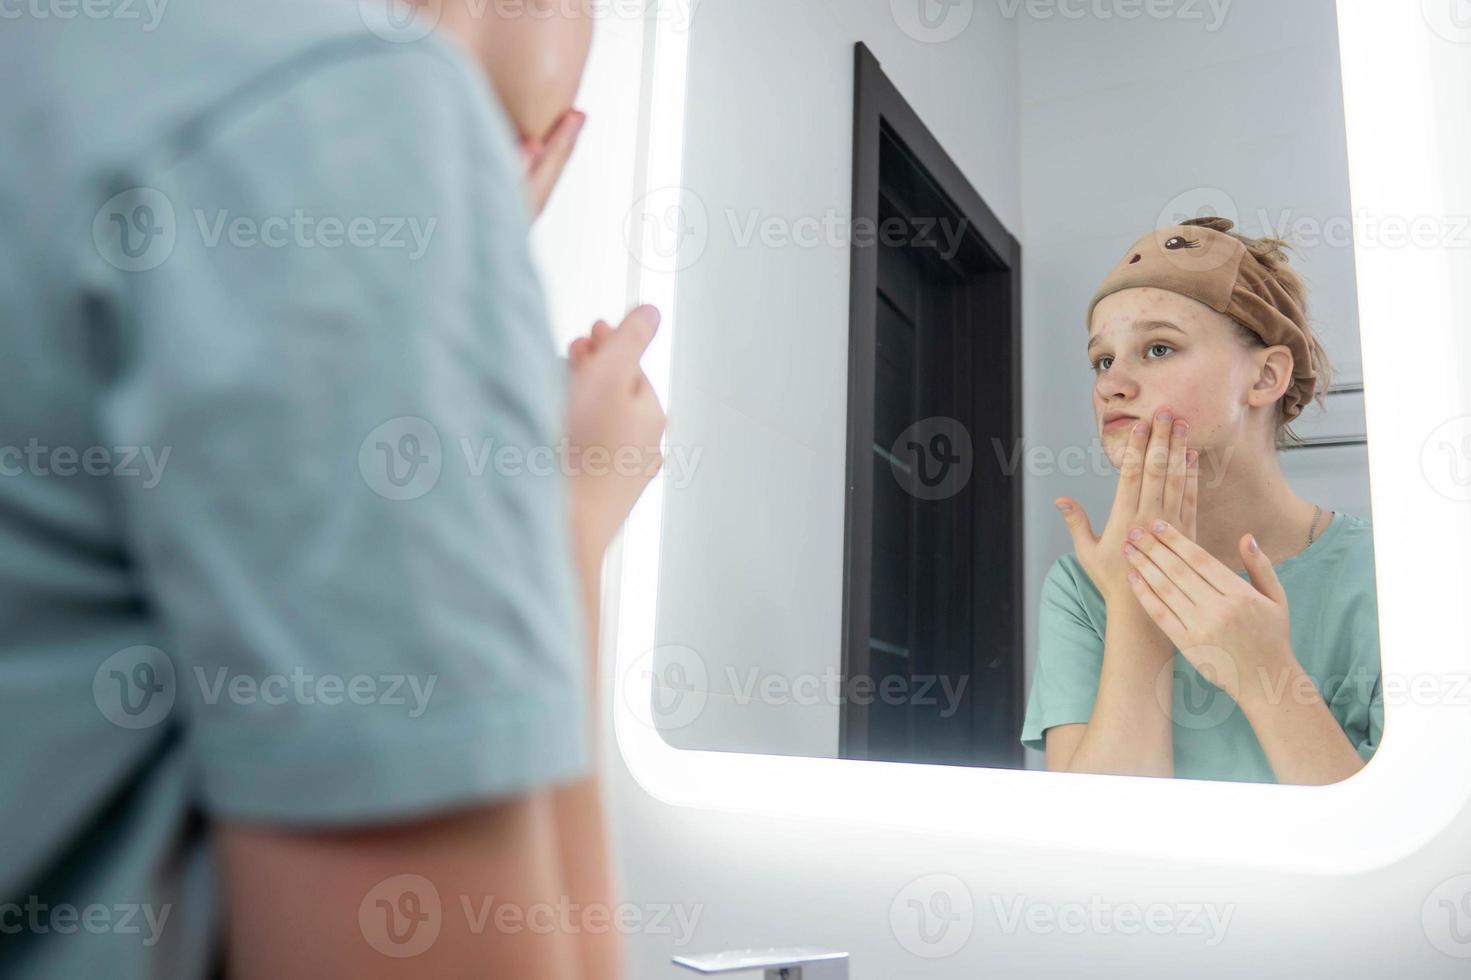 tonåring flicka tar vård av problem hud, utseende i de spegel foto